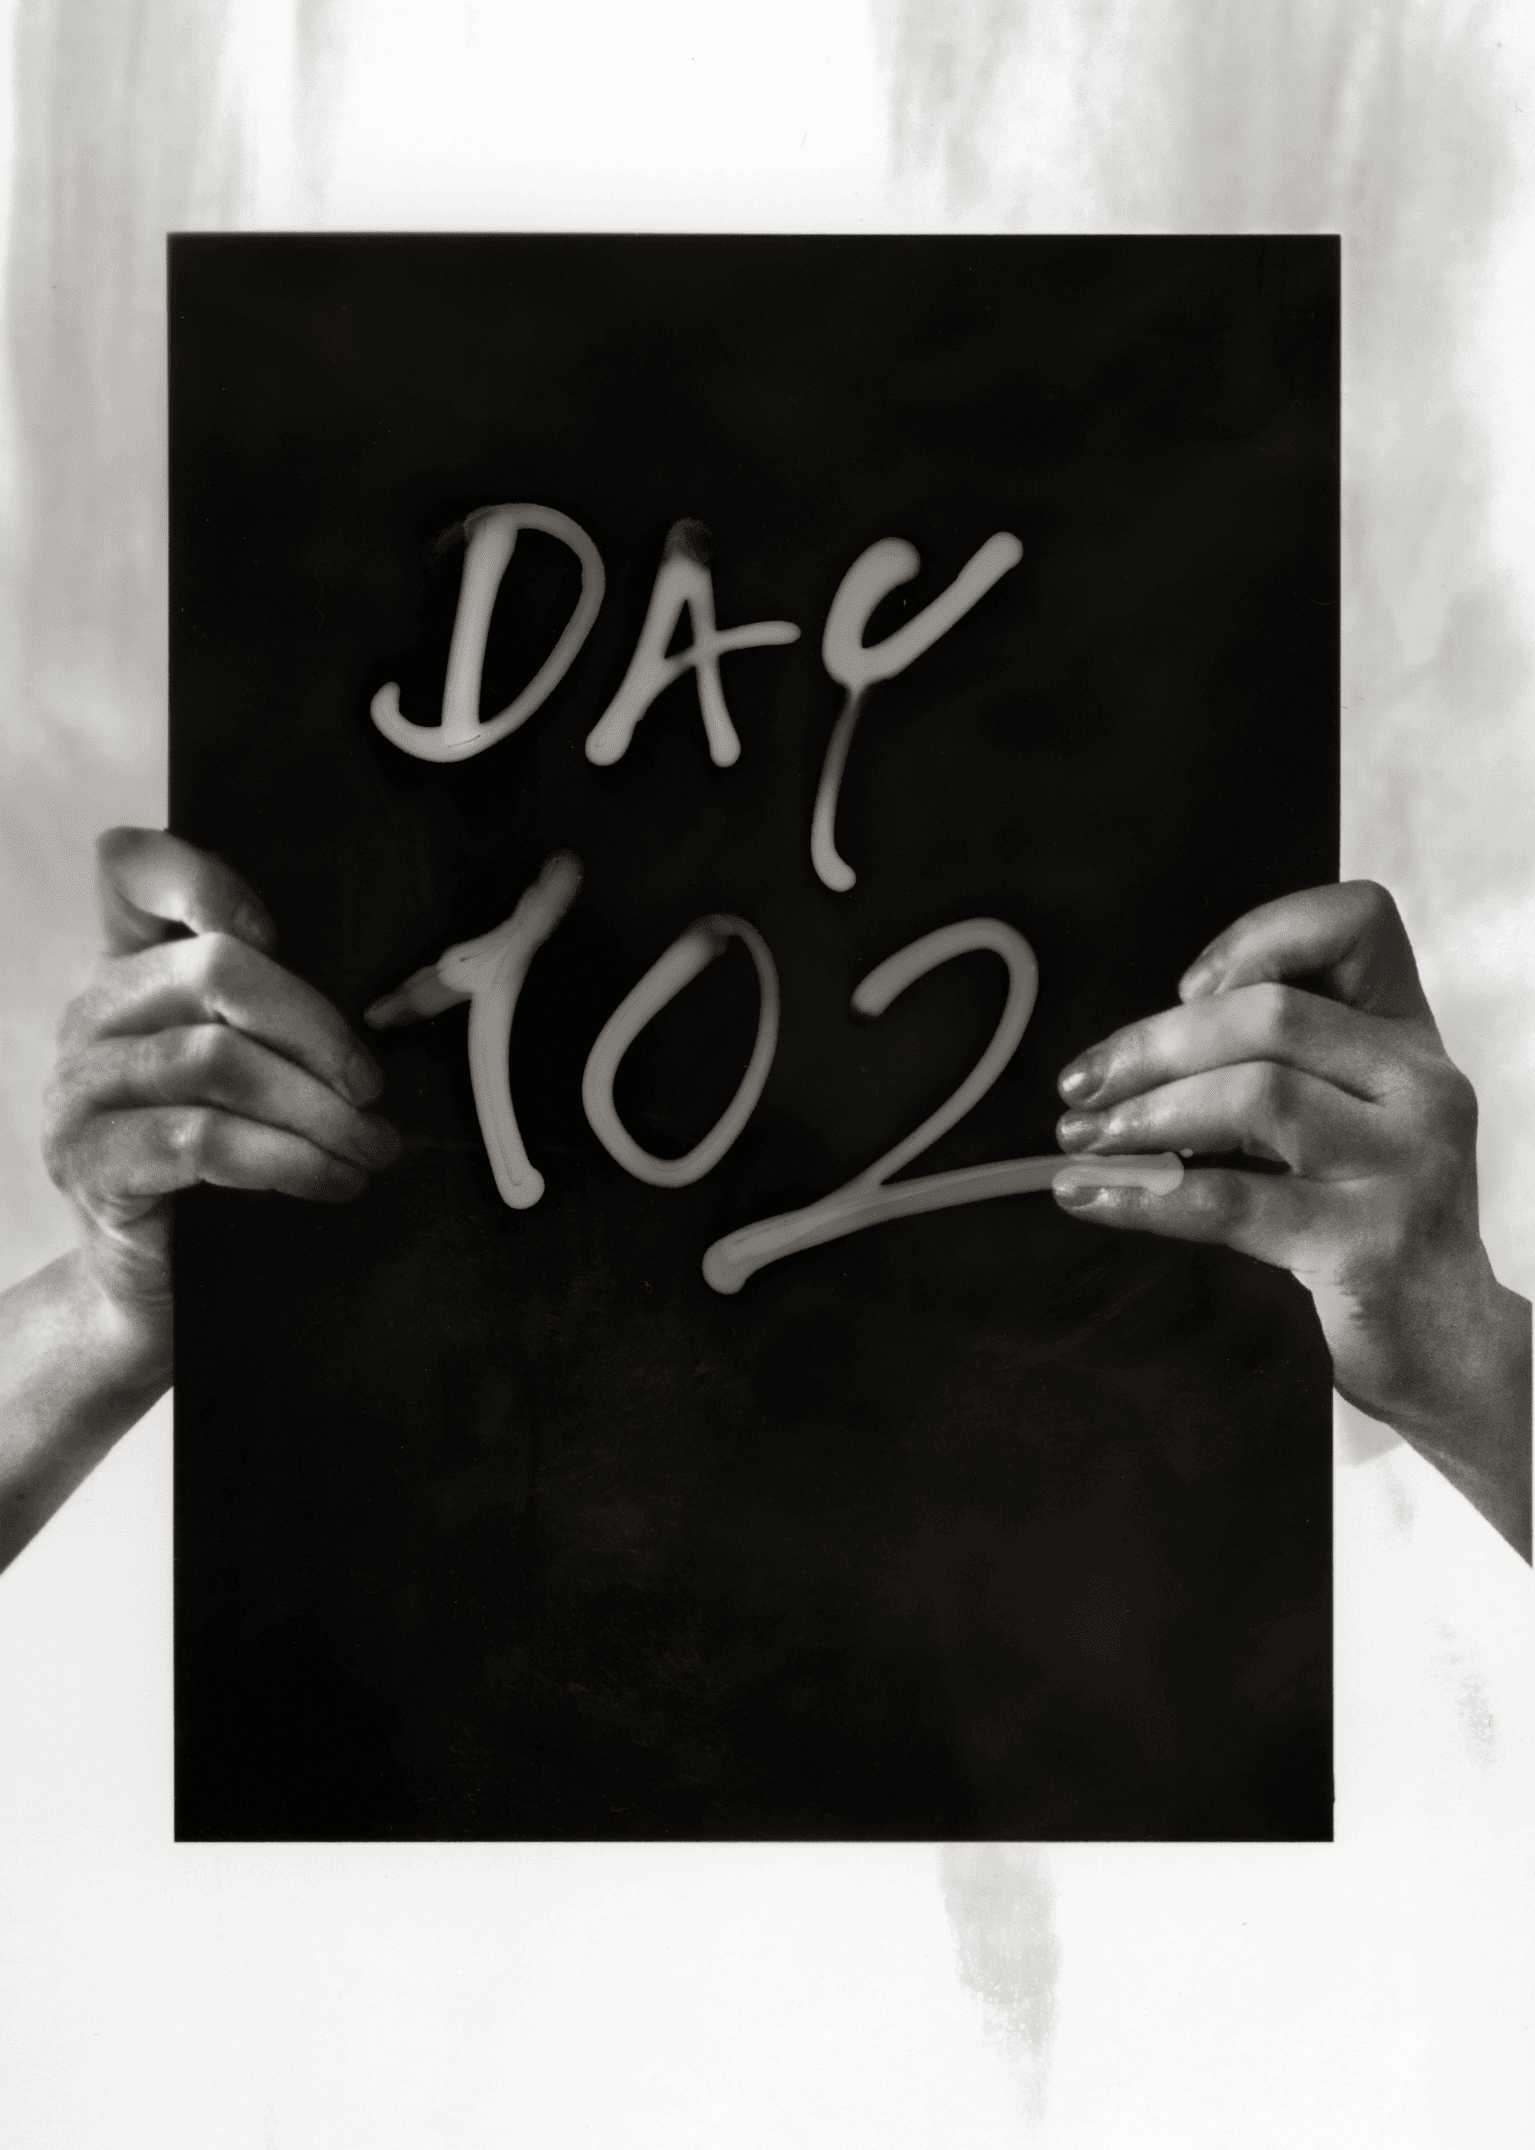 Day 102 - Sunday, 06/05/2022